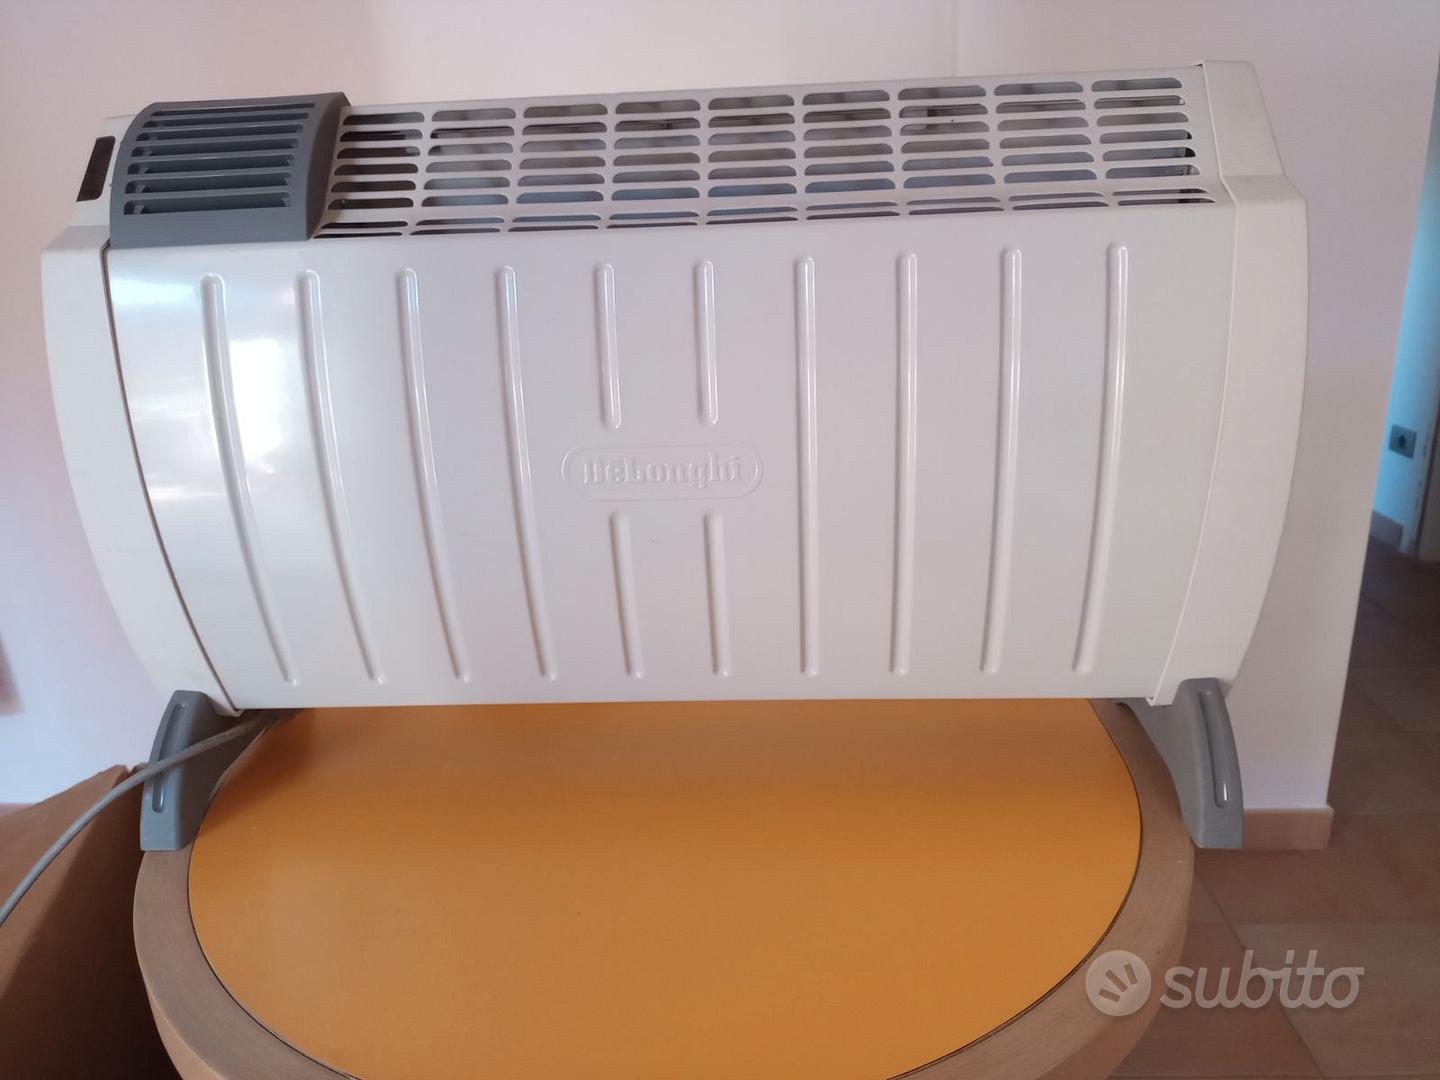 Termoconvettore caldo/freddo - Elettrodomestici In vendita a Roma